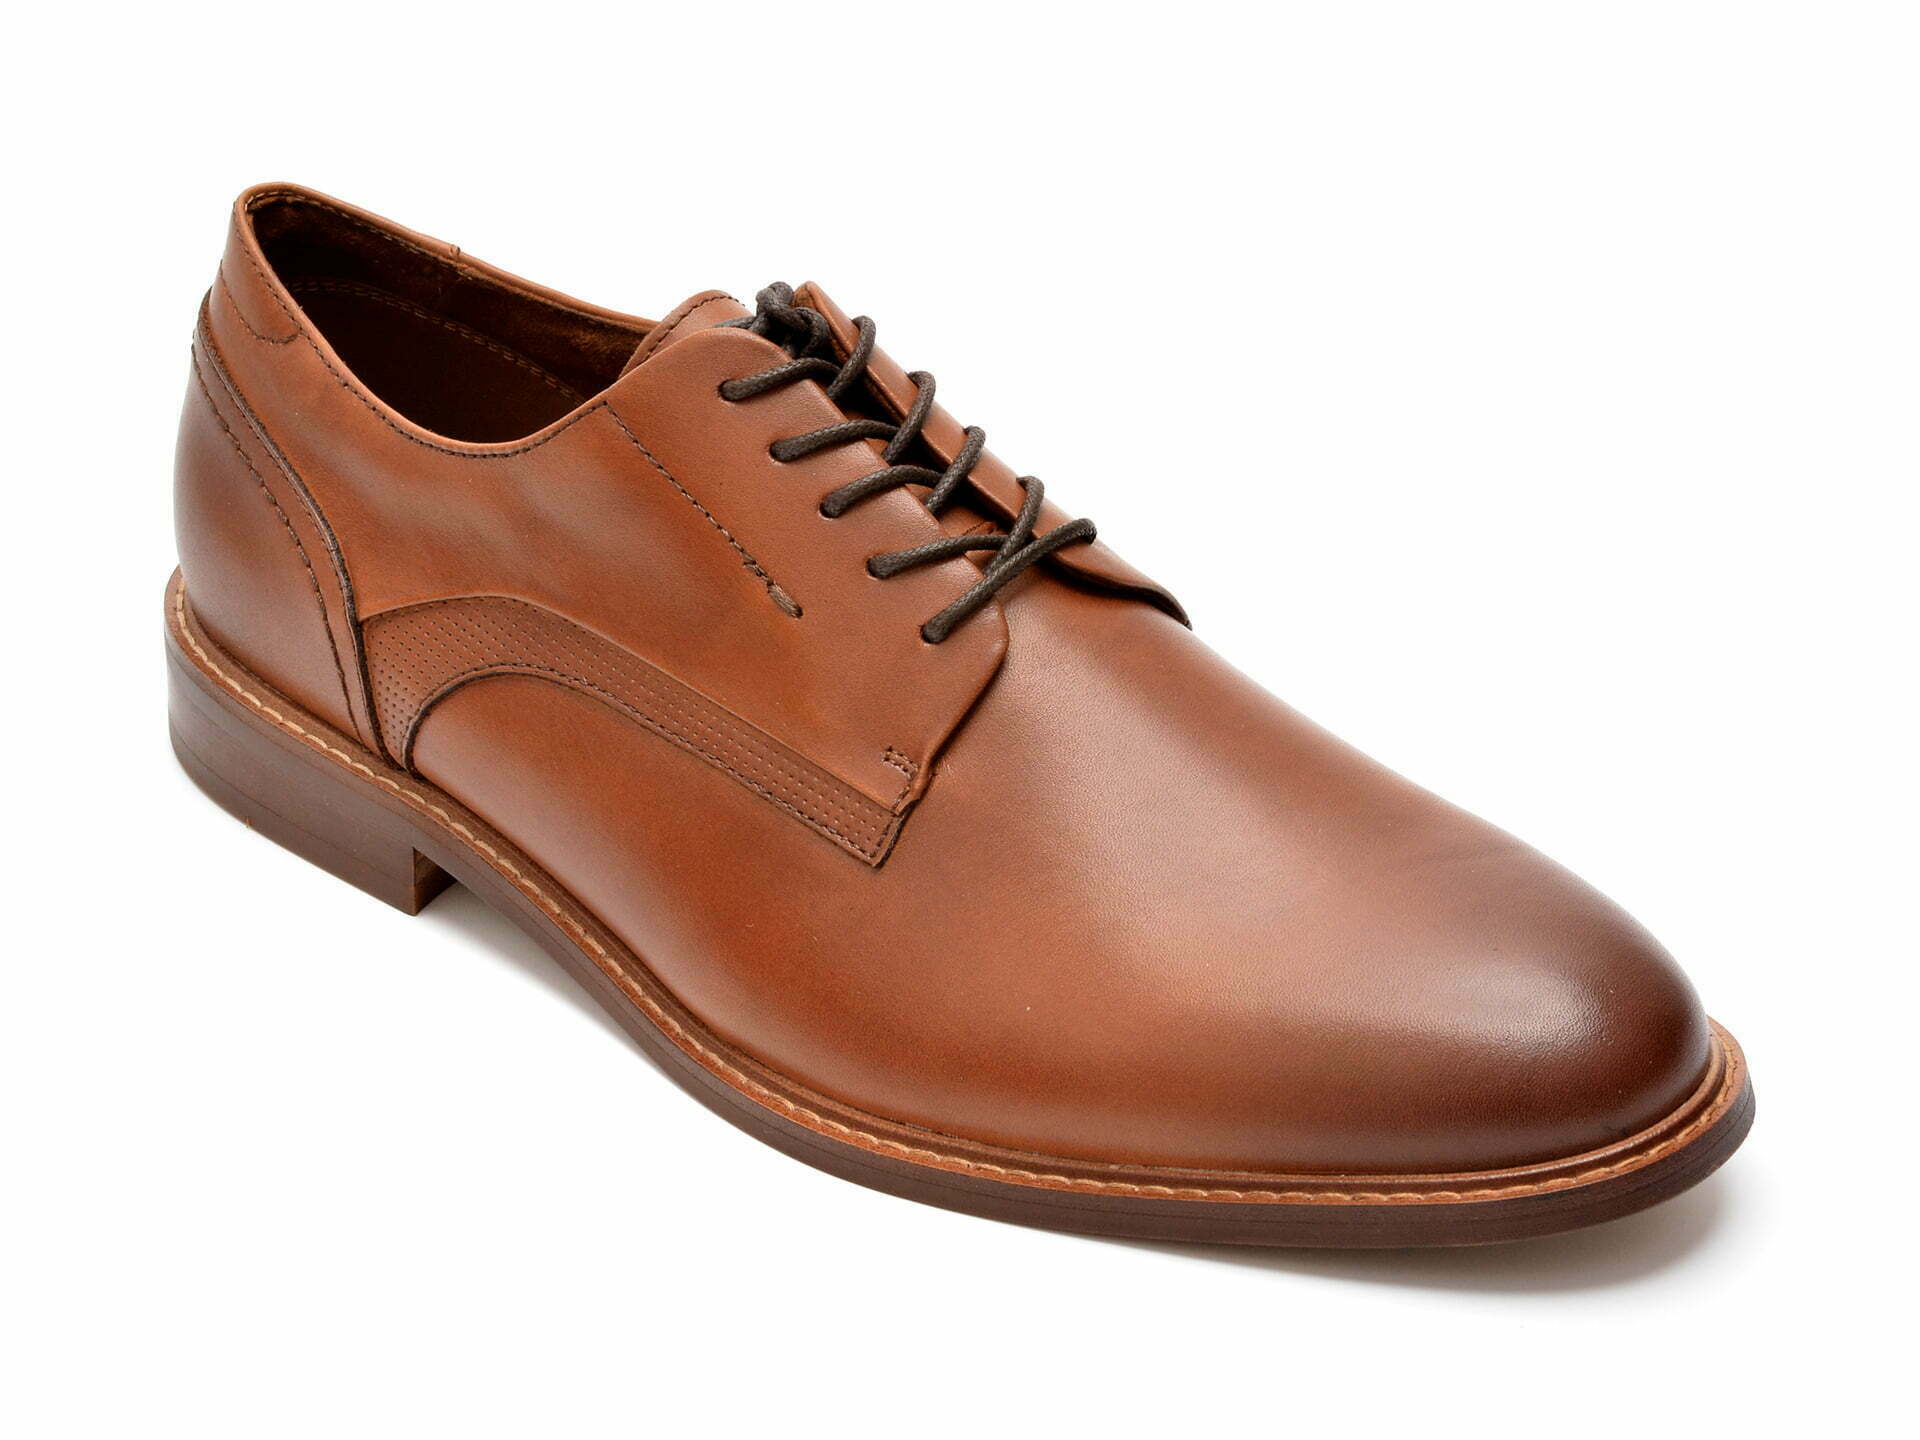 Comandă Încălțăminte Damă, la Reducere  Pantofi ALDO maro, LOBSTERFLEX230, din piele naturala Branduri de top ✓